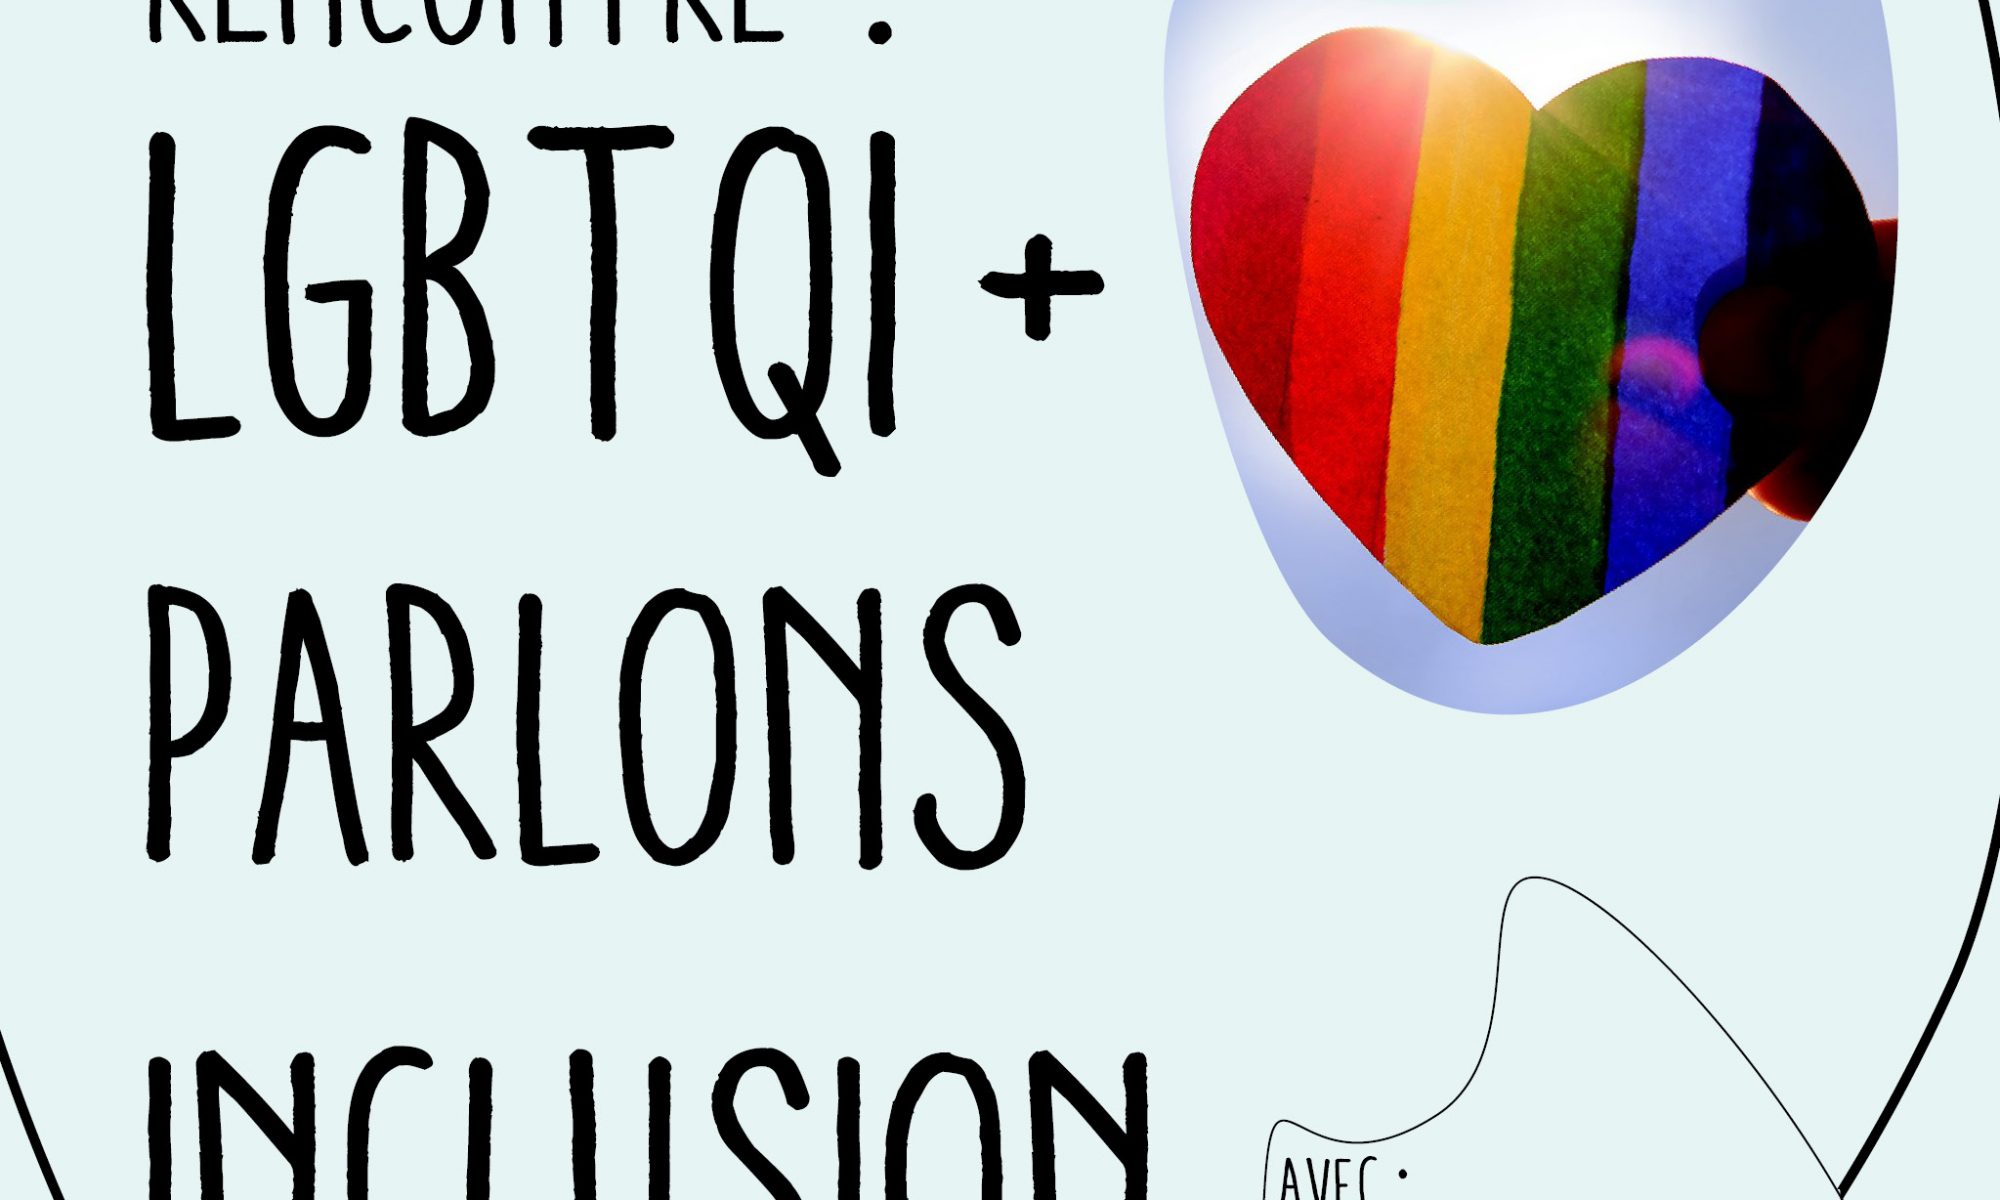 Colloque LGBTQI+ Parlons inclusion à Collégien avec la photographe Emeline Hamon